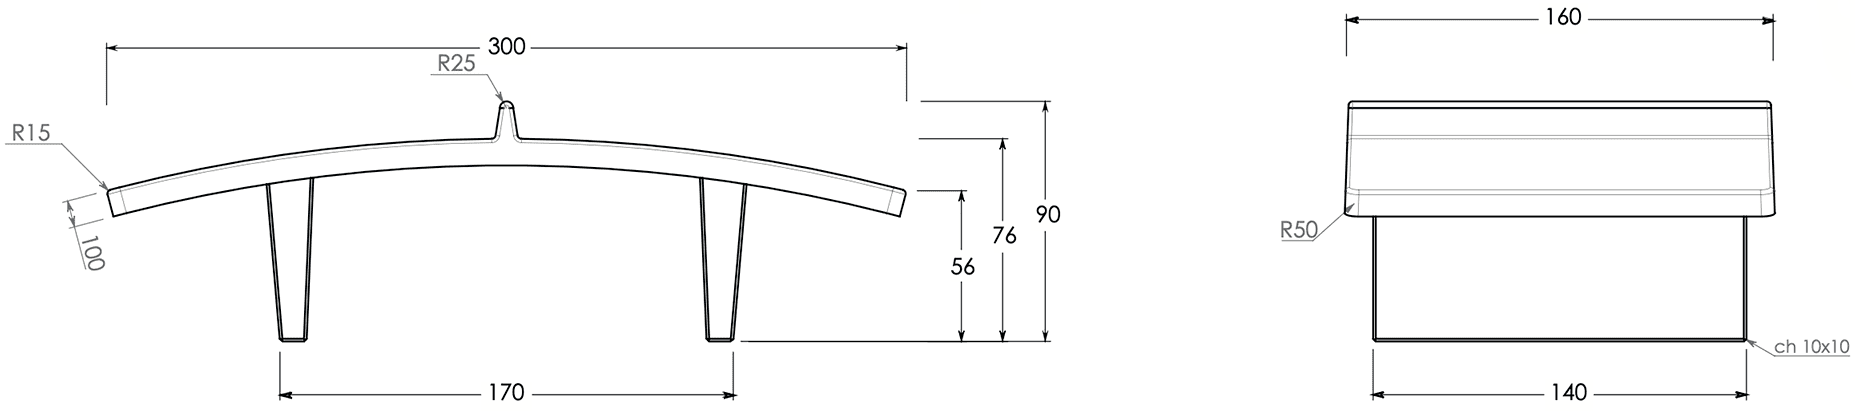 Schéma avec dimensions de la table de teqball